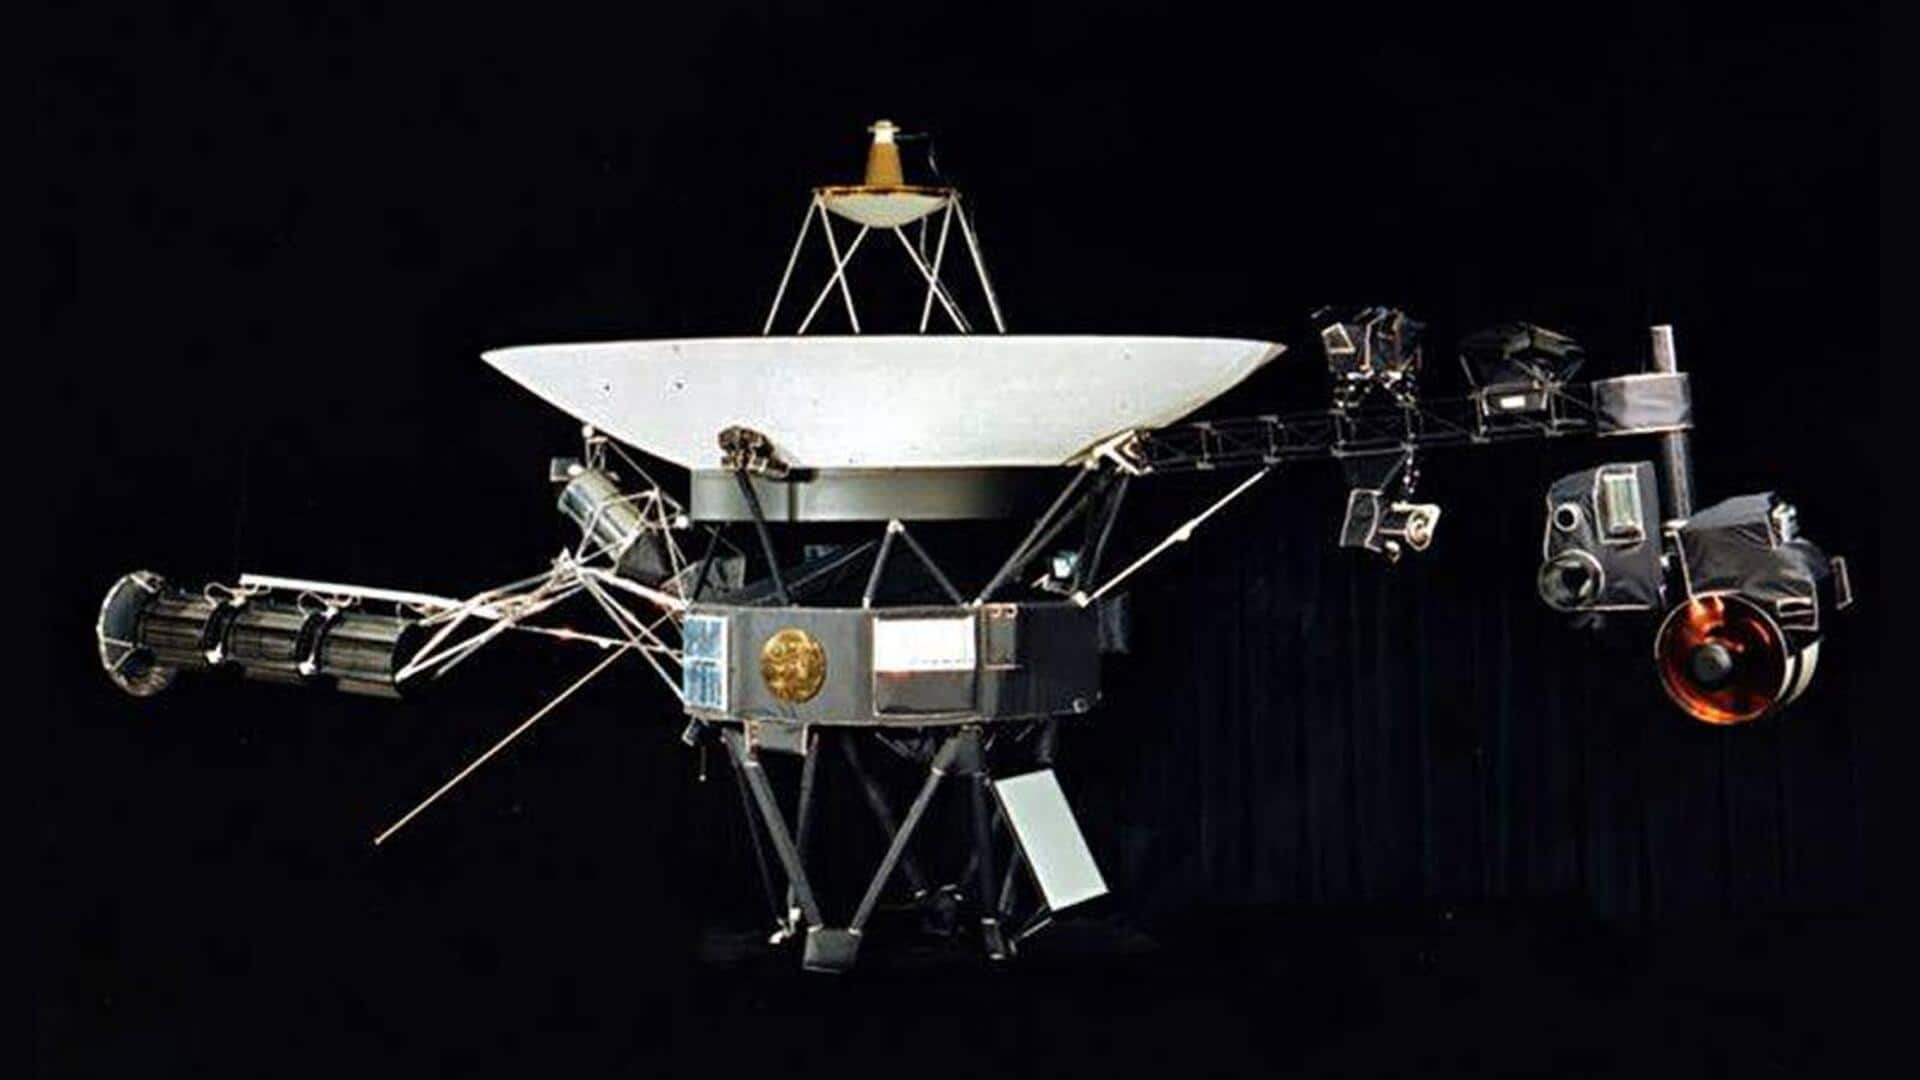 नासा का वोयाजर 2 अंतरिक्ष यान से टूटा संपर्क, जानकारी हासिल करने में हो रही दिक्कत